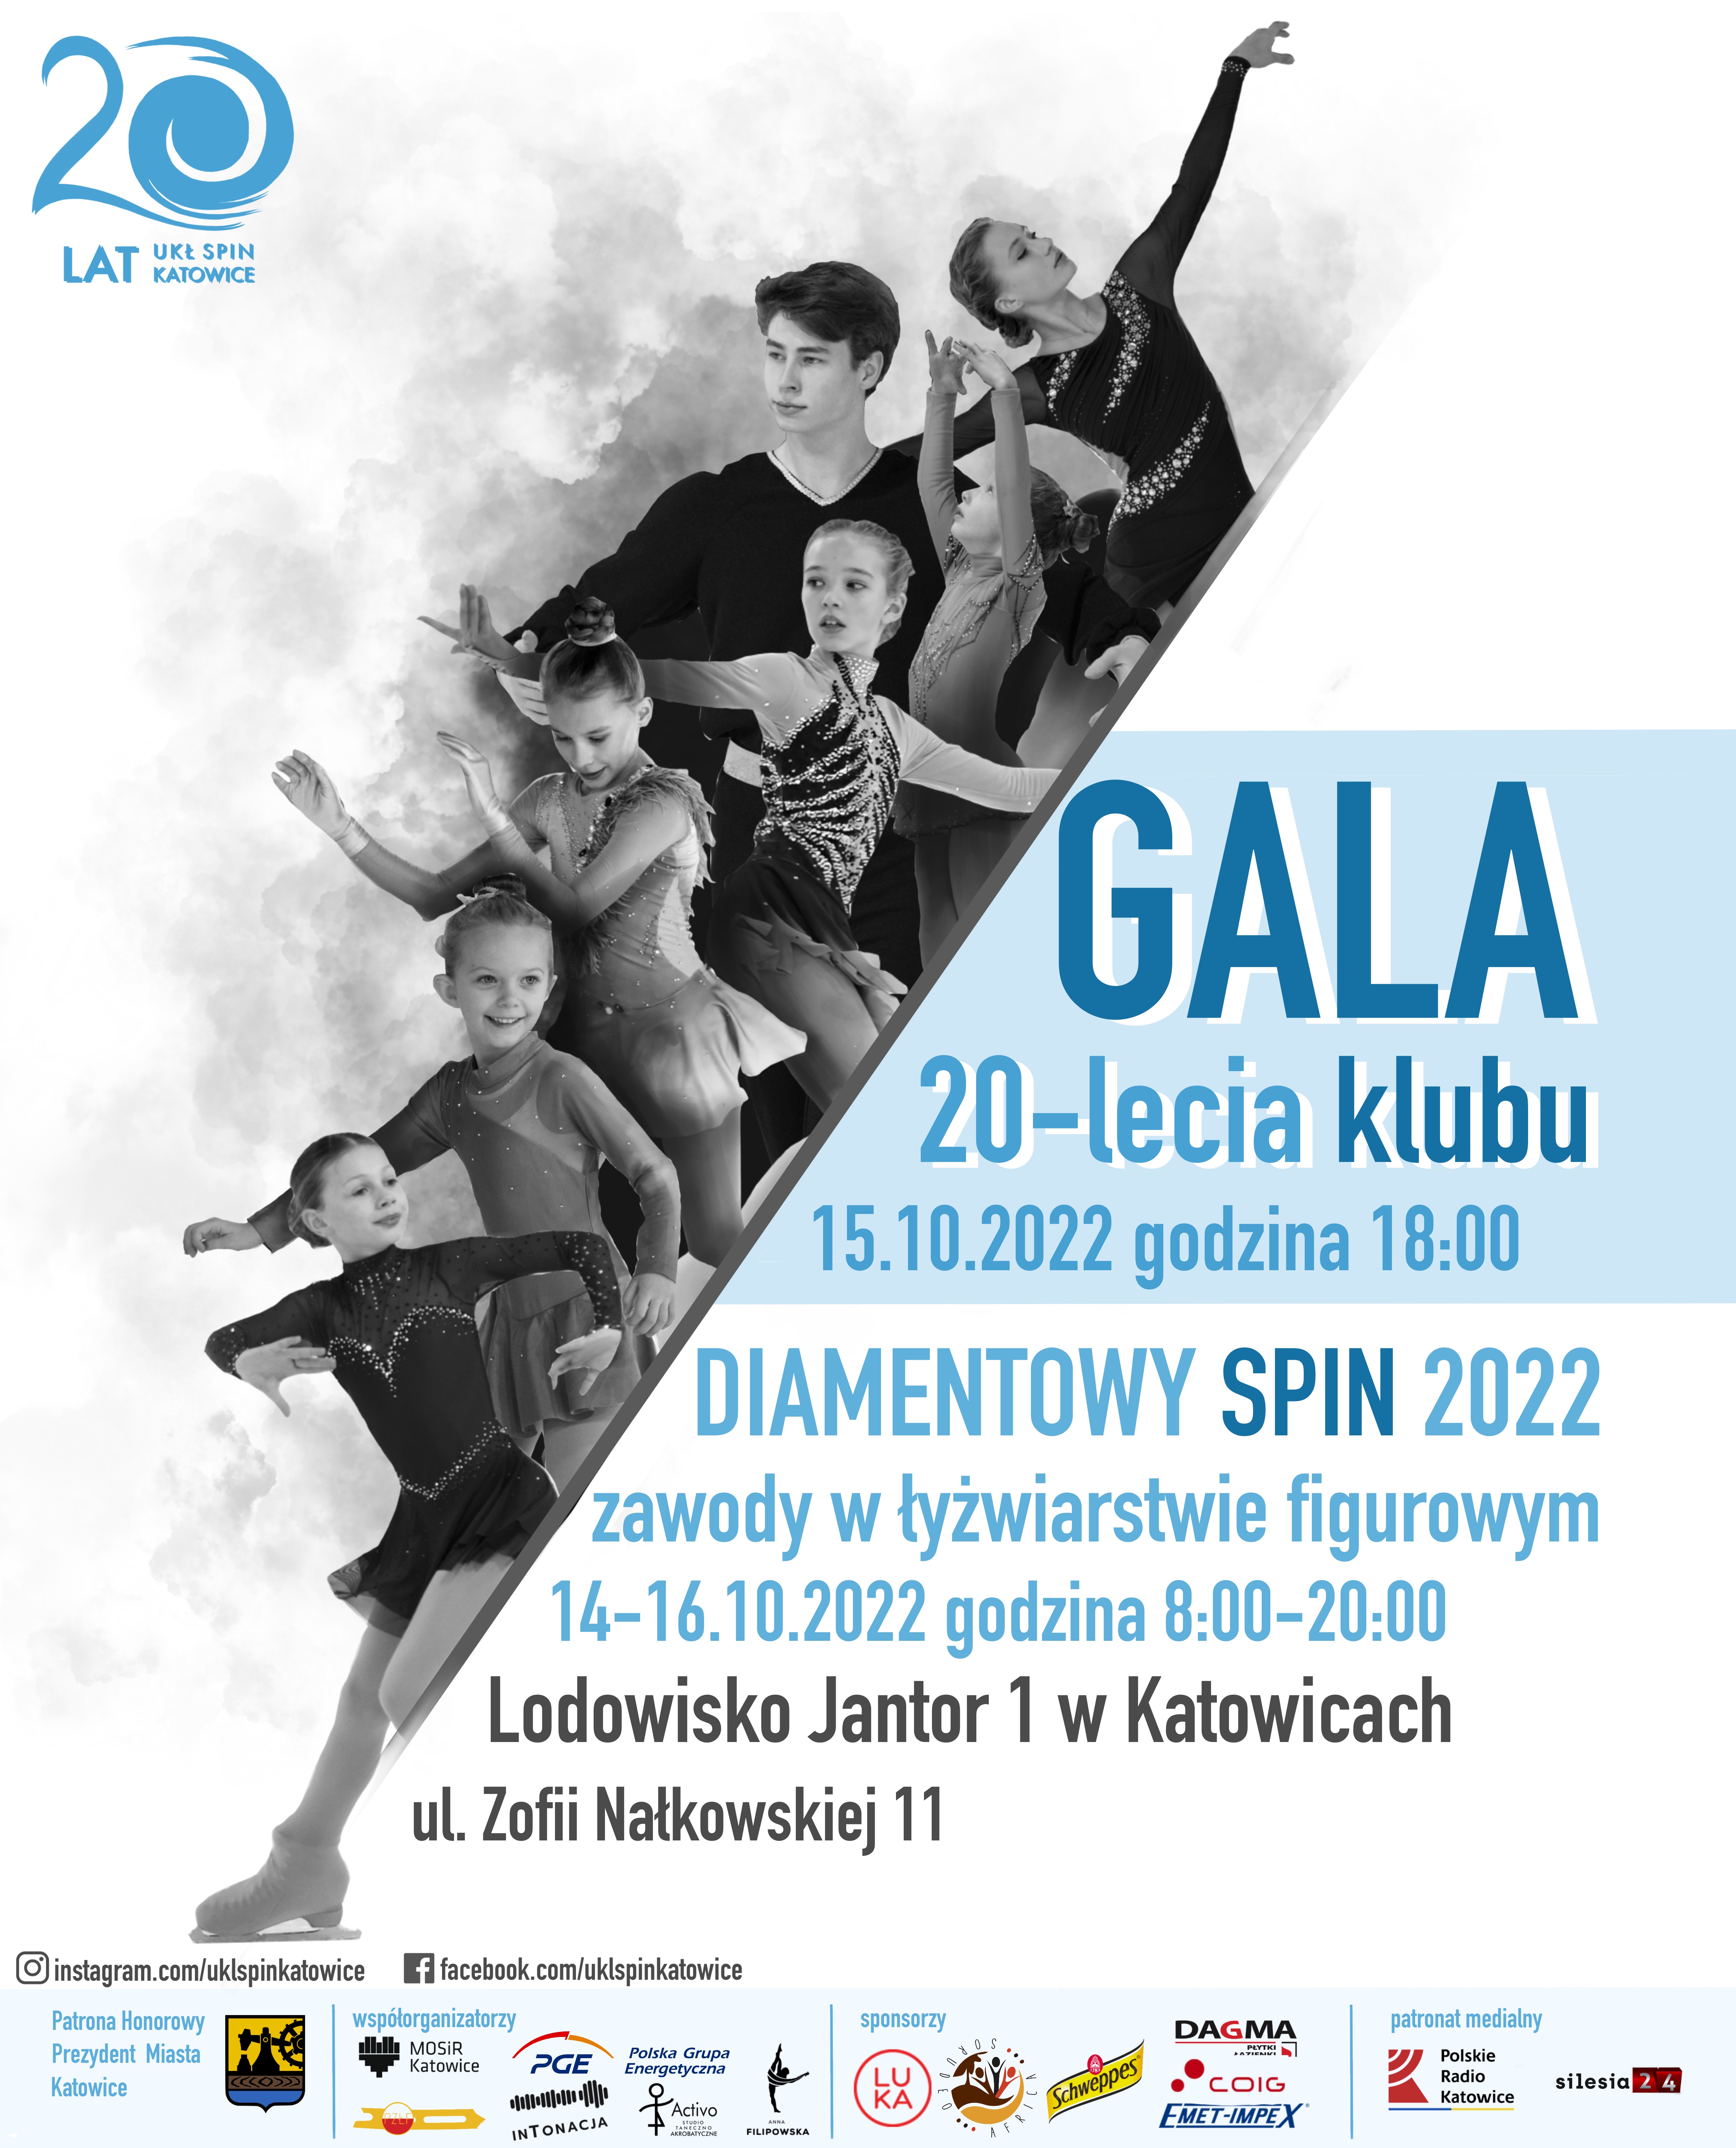 Diamentowy Spin 2022 oraz 20-lecie klubu UKŁ SPIN Katowice